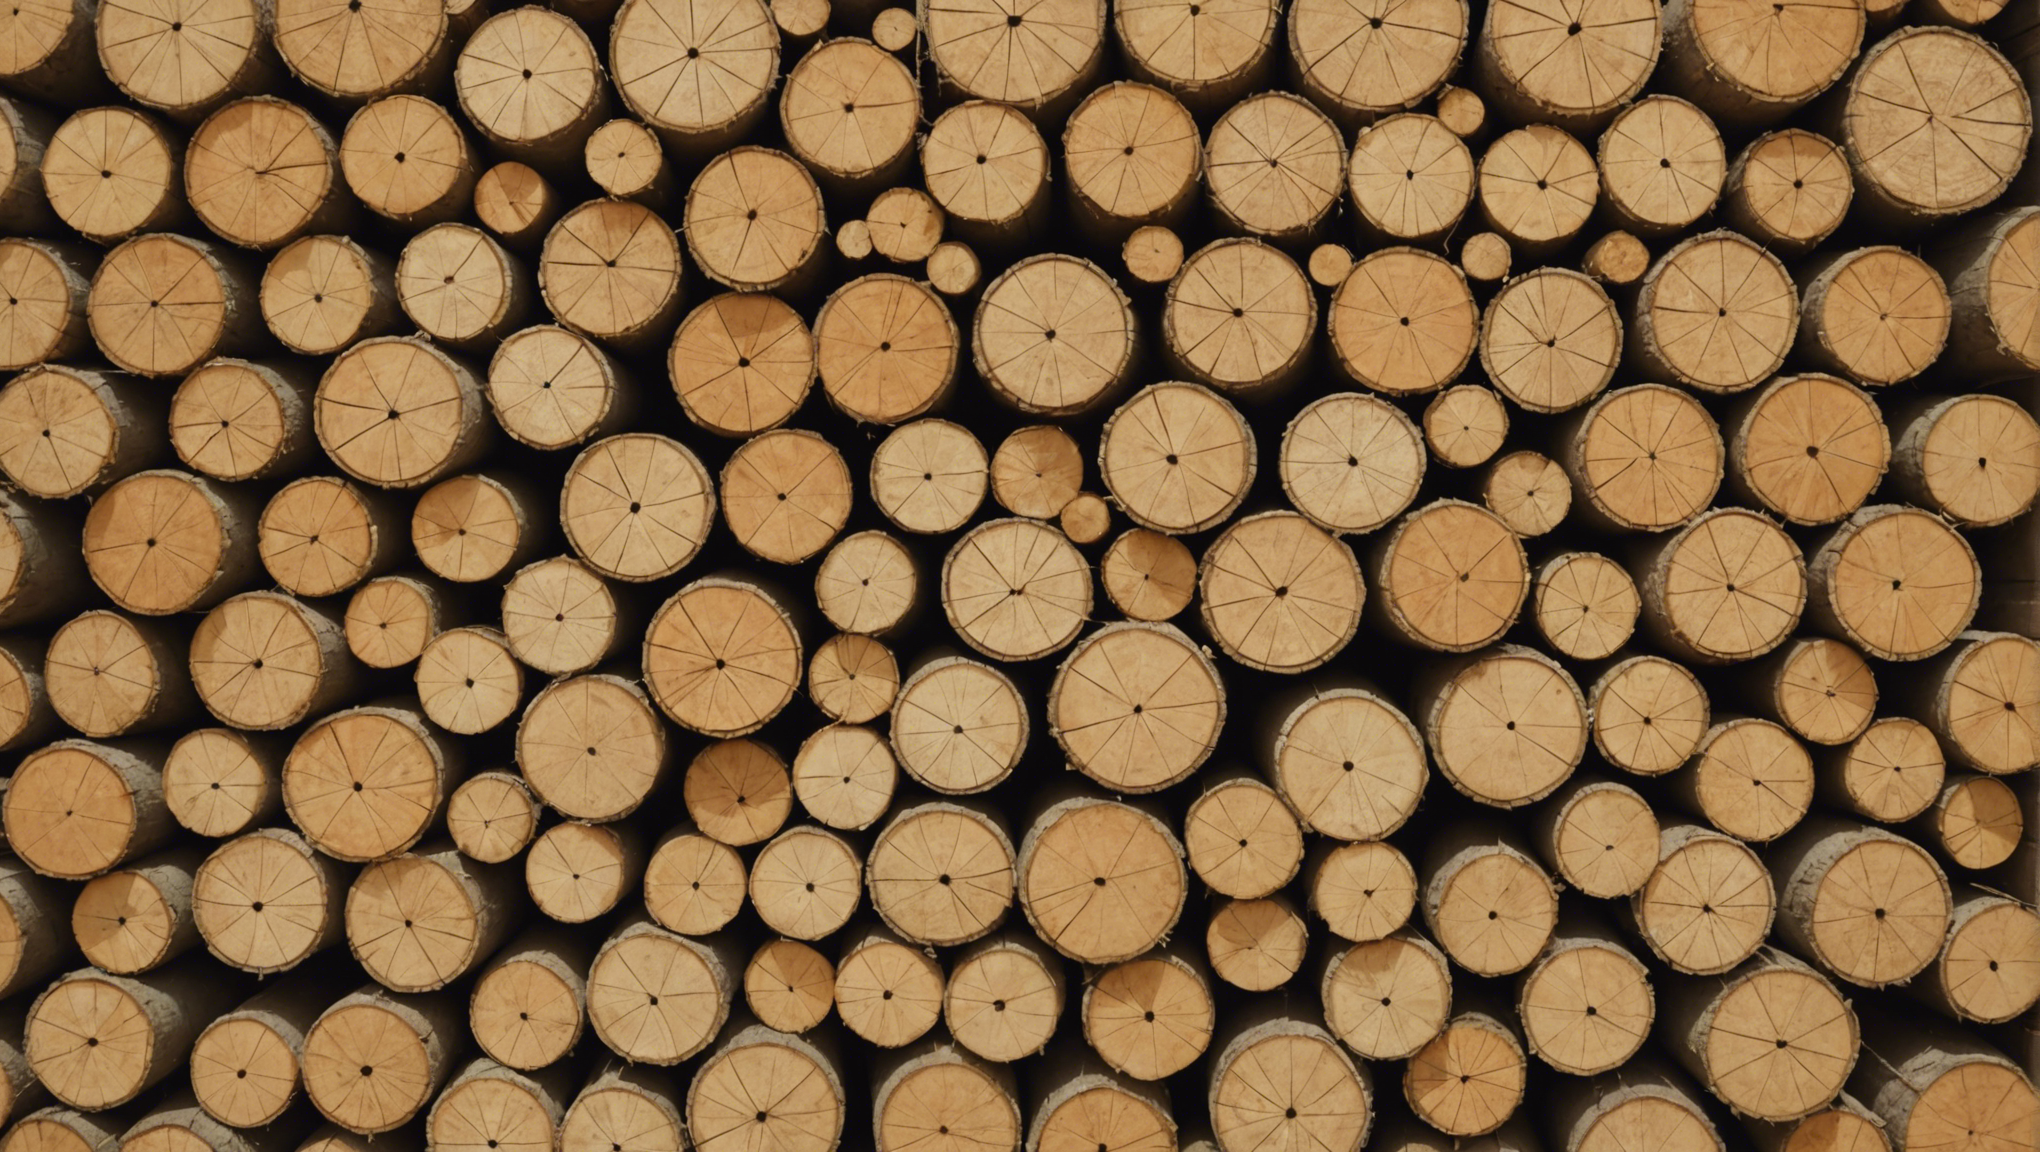 découvrez notre gamme de panneaux isolants en fibre de bois pour une isolation performante et écologique. choisissez la qualité et la durabilité pour votre projet de construction ou de rénovation.